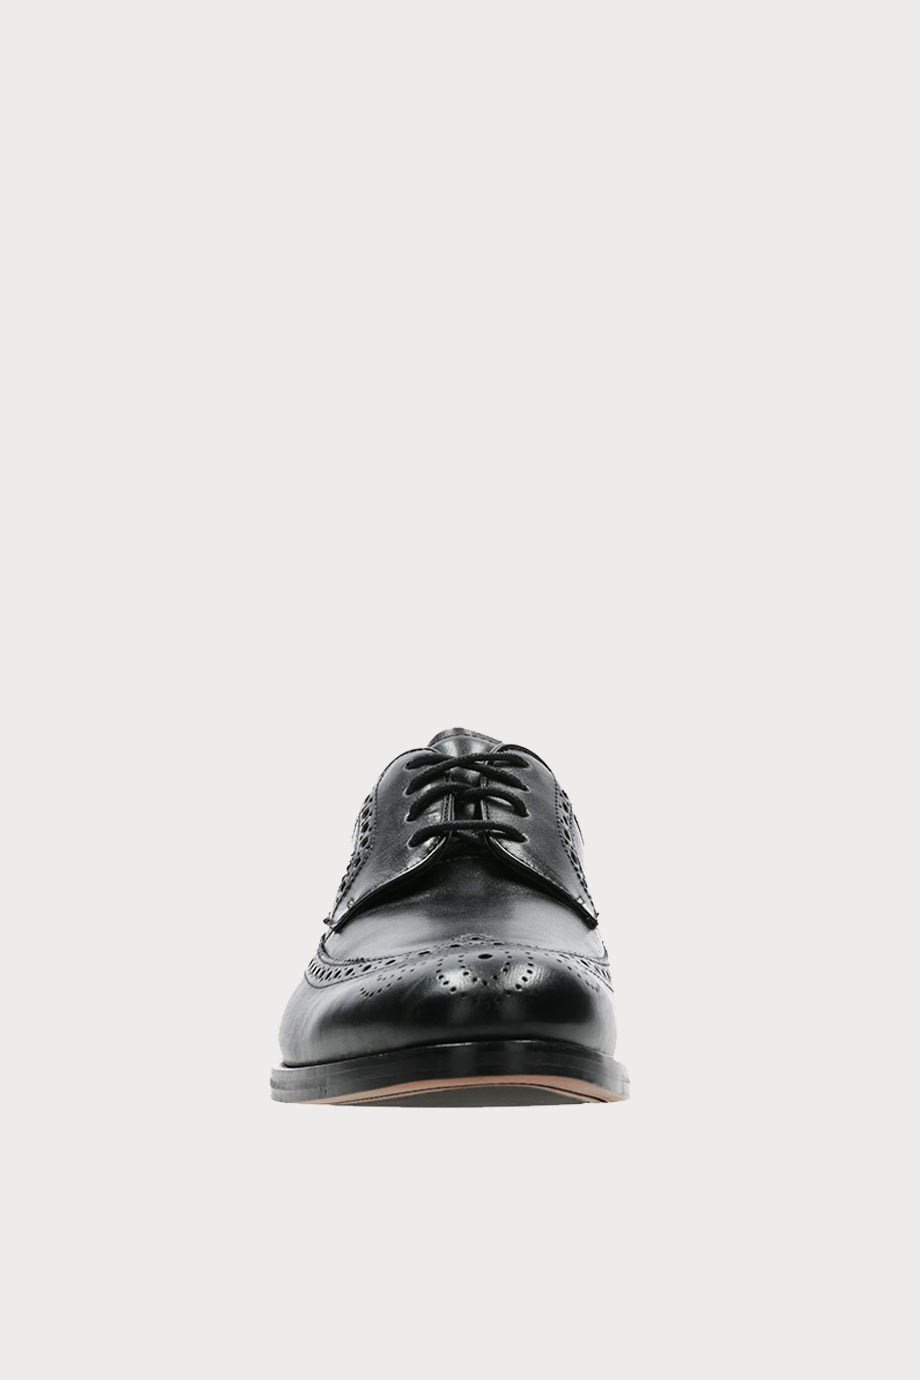 spiridoula metheniti shoes xalkida p coling limit black leather clarks 3